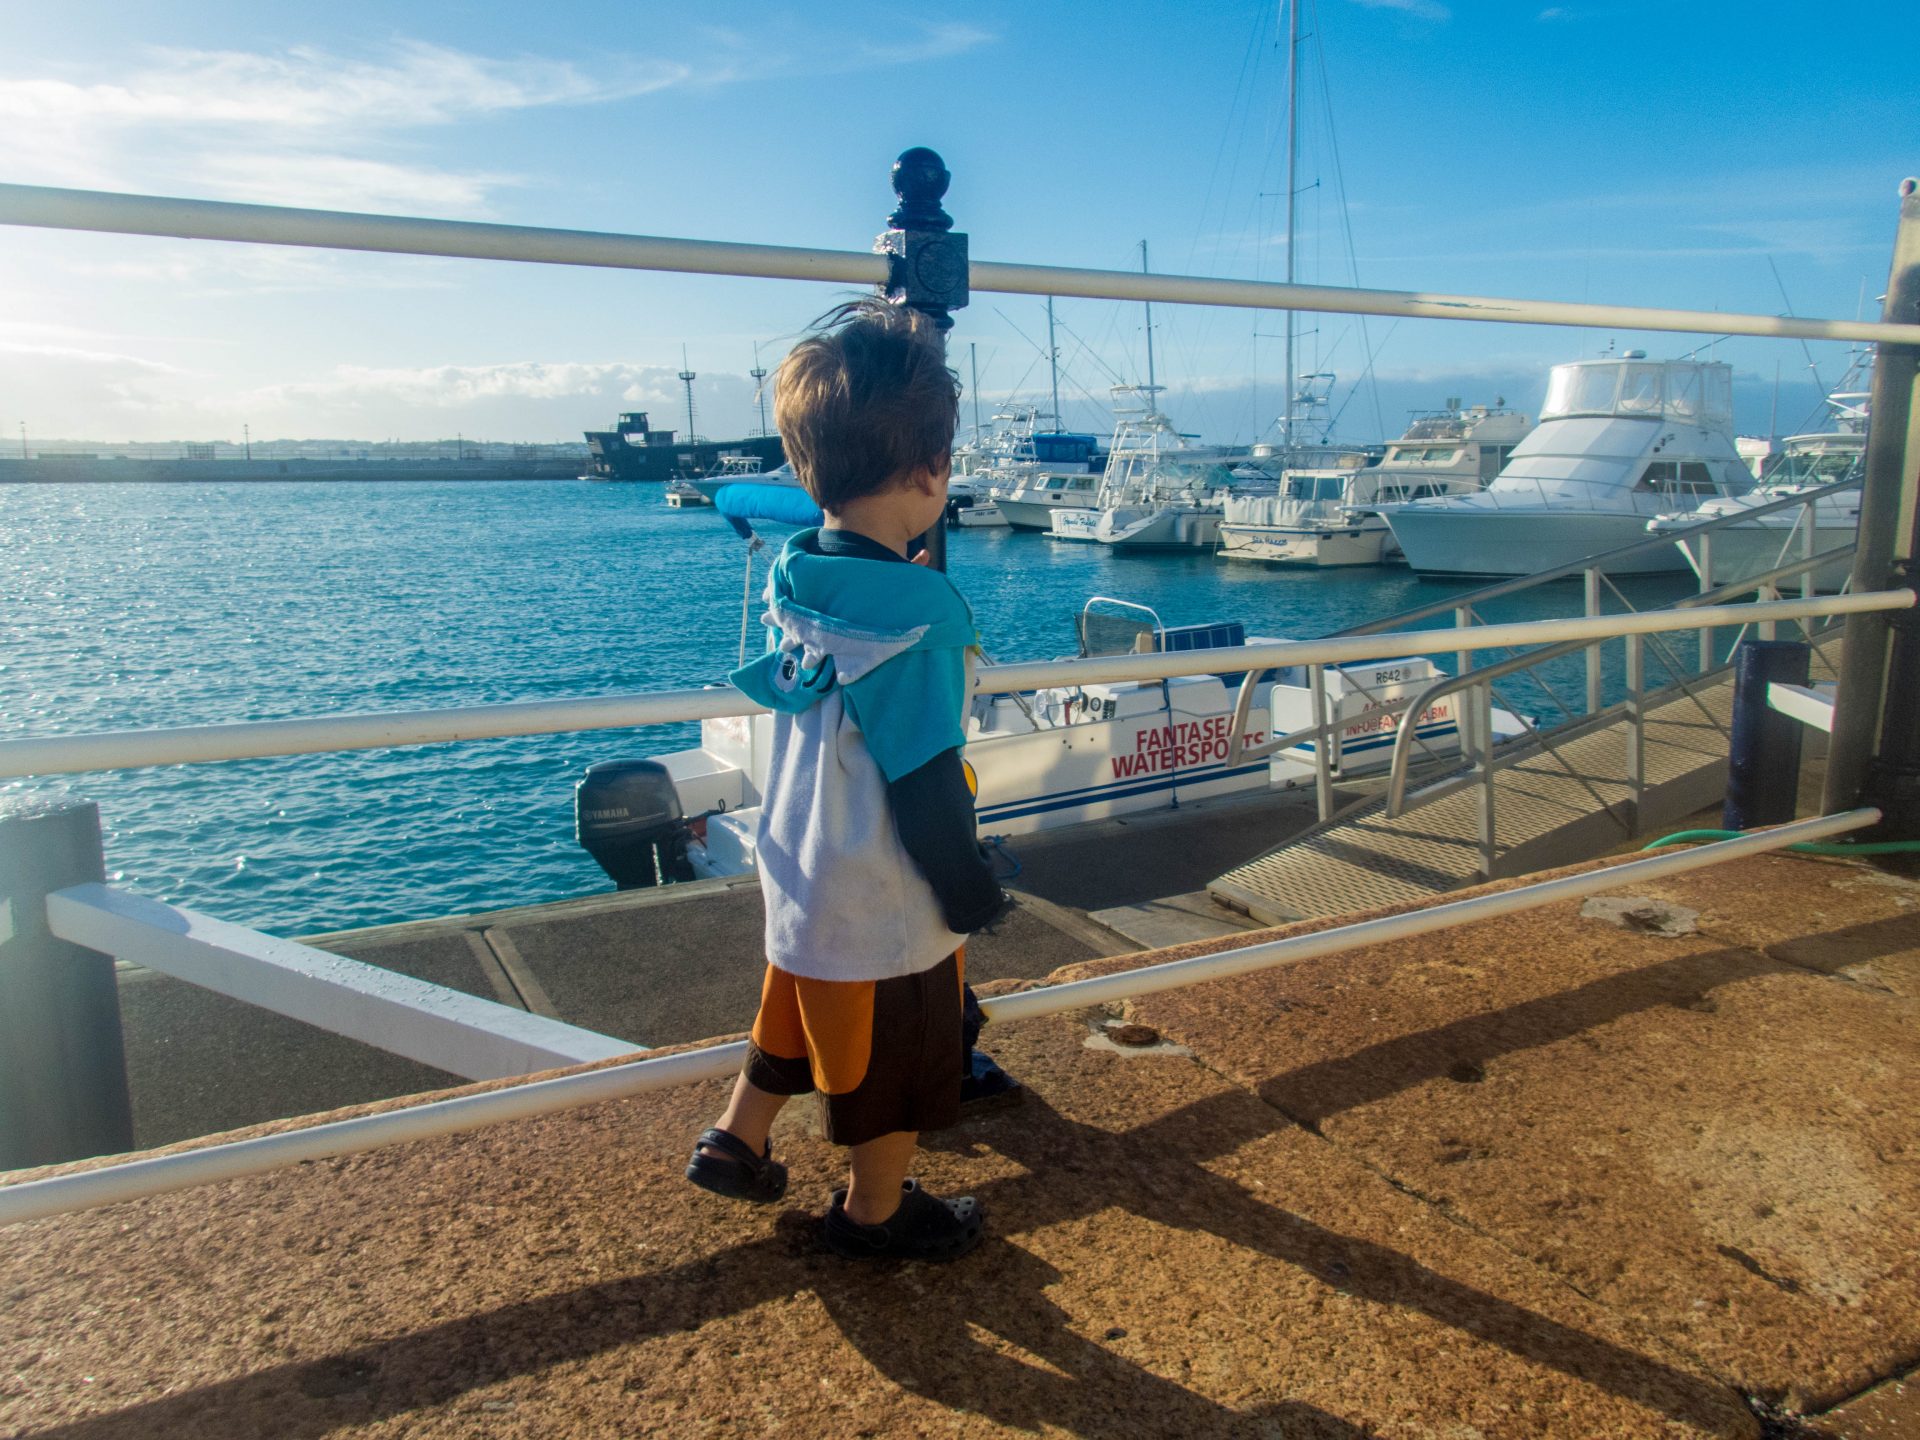 Toddler wearing swim gear walks along a boat pier - Boating in Bermuda